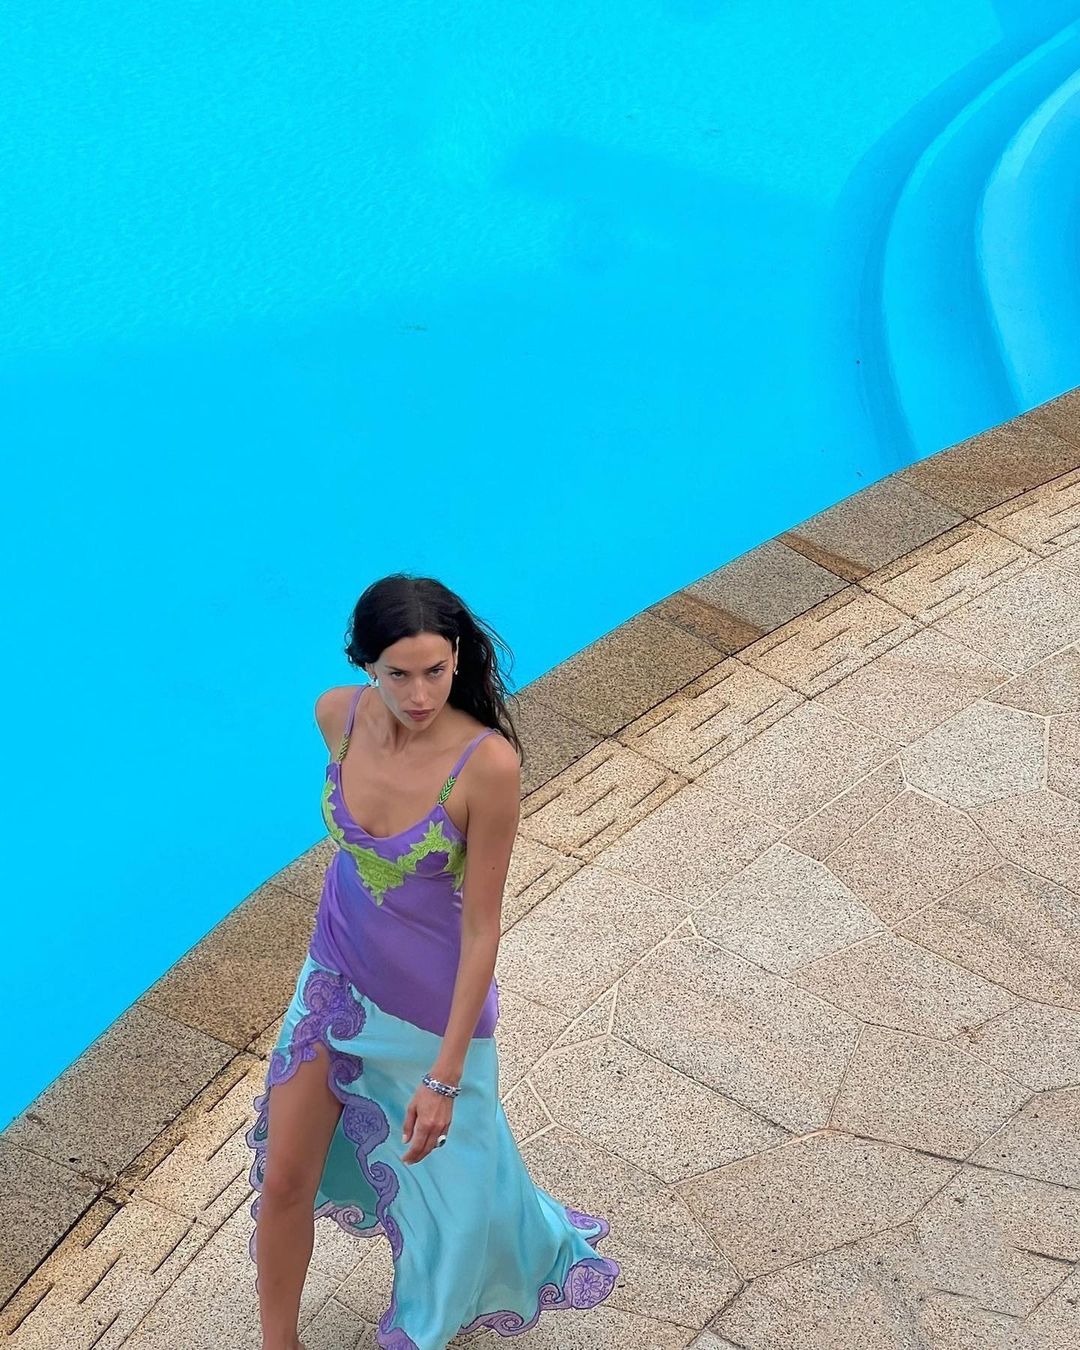 Irina Shayk’s Versace by The Pool! - Photo 5